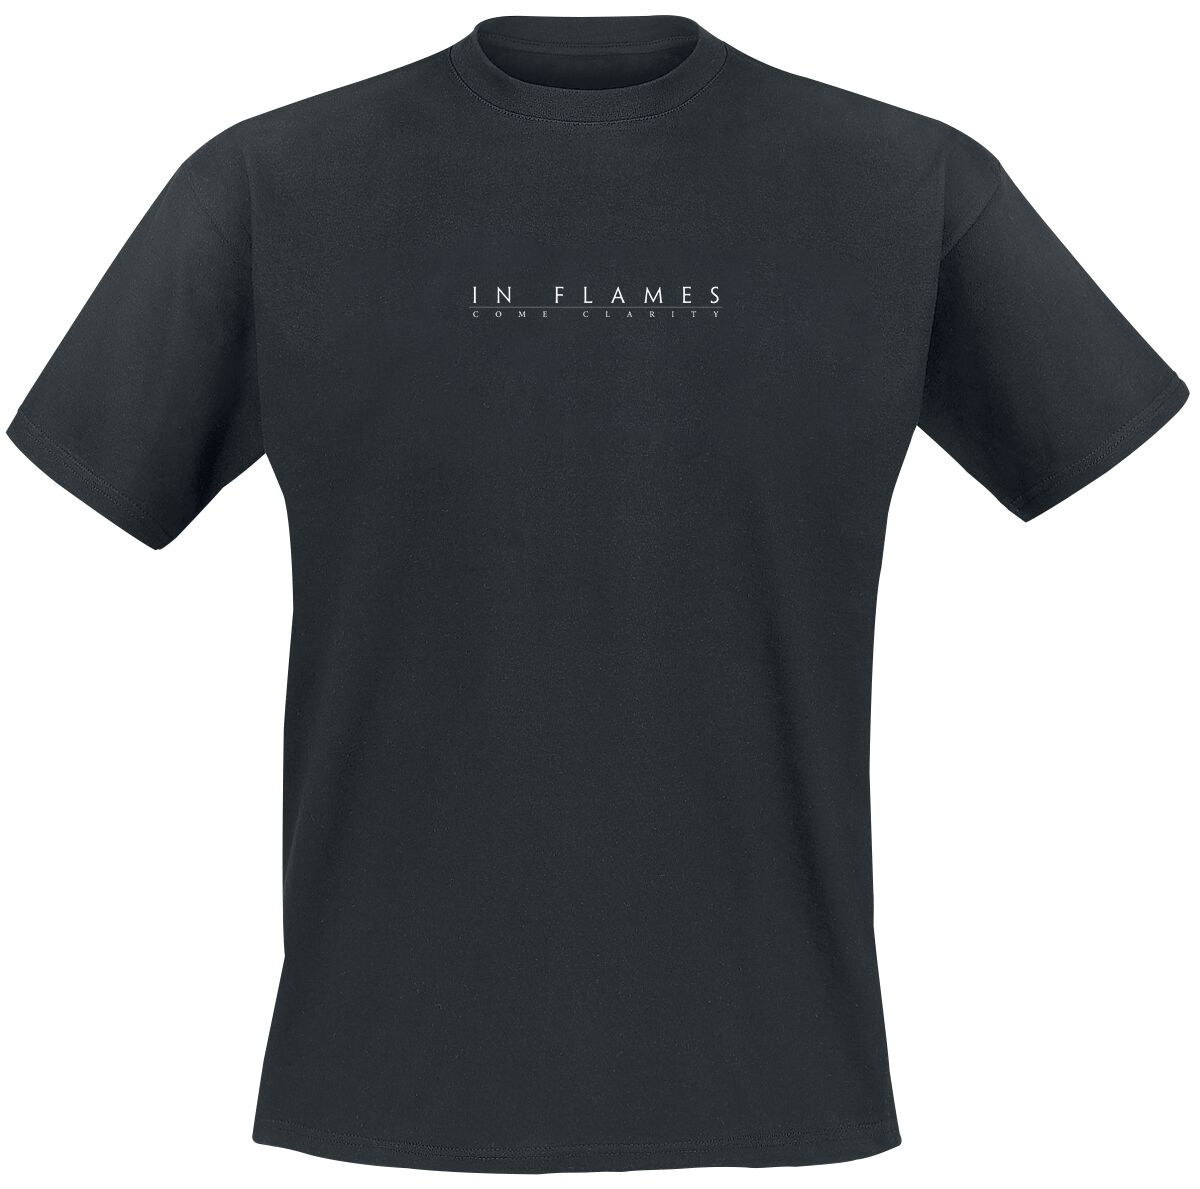 In Flames T-Shirt - Come Clarity Square - S bis 3XL - für Männer - Größe S - schwarz  - Lizenziertes Merchandise!